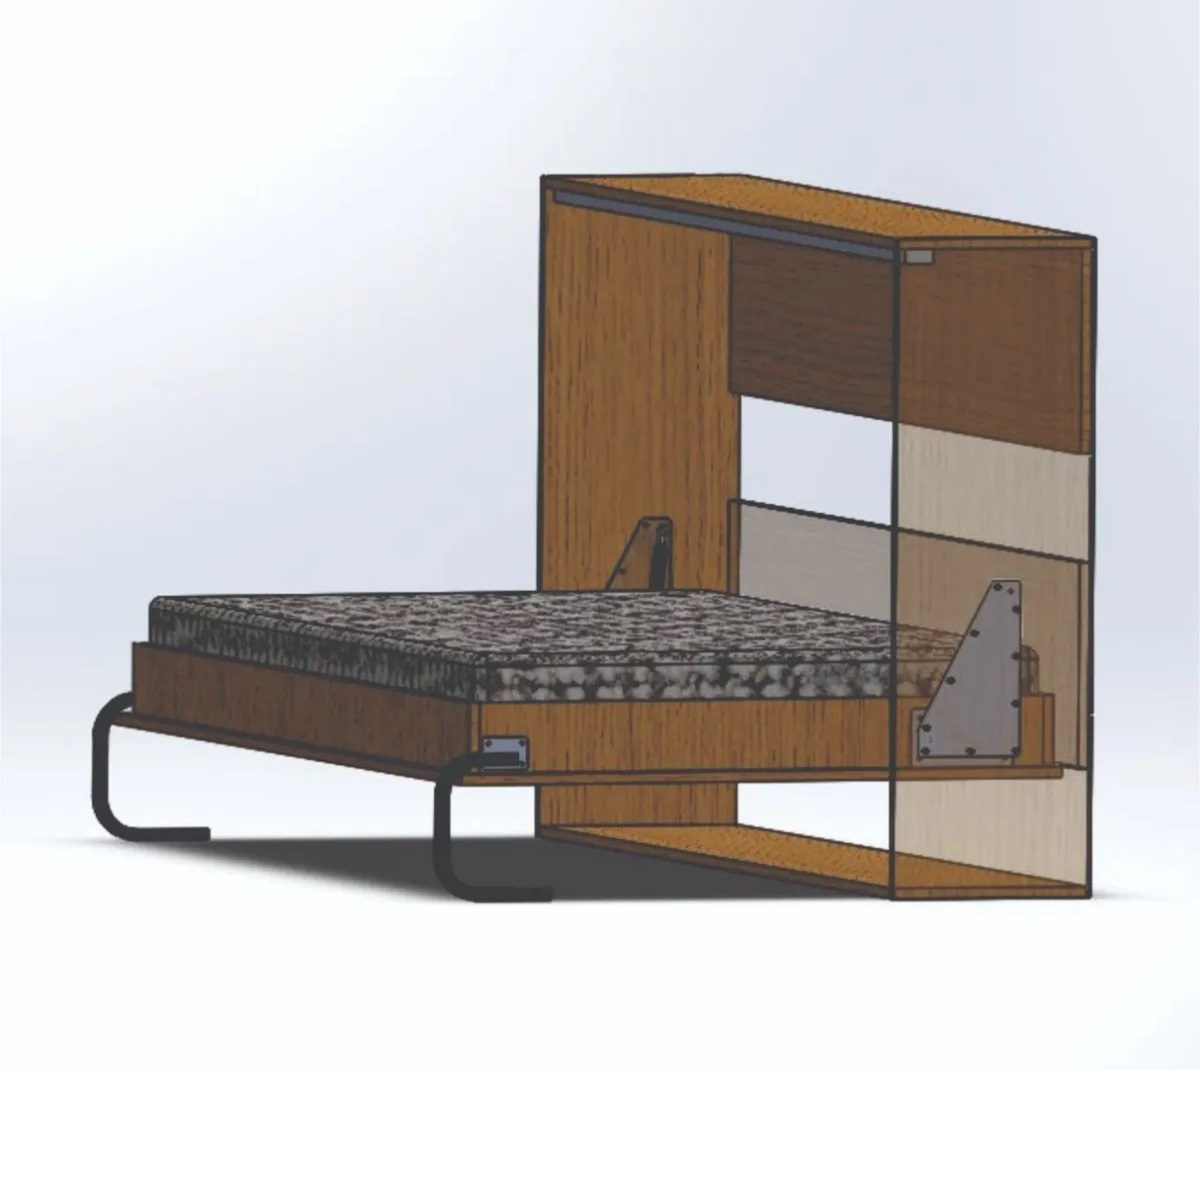 Herraje para cama de 2 plazas + escritorio (Majestic) - Hiddenbed